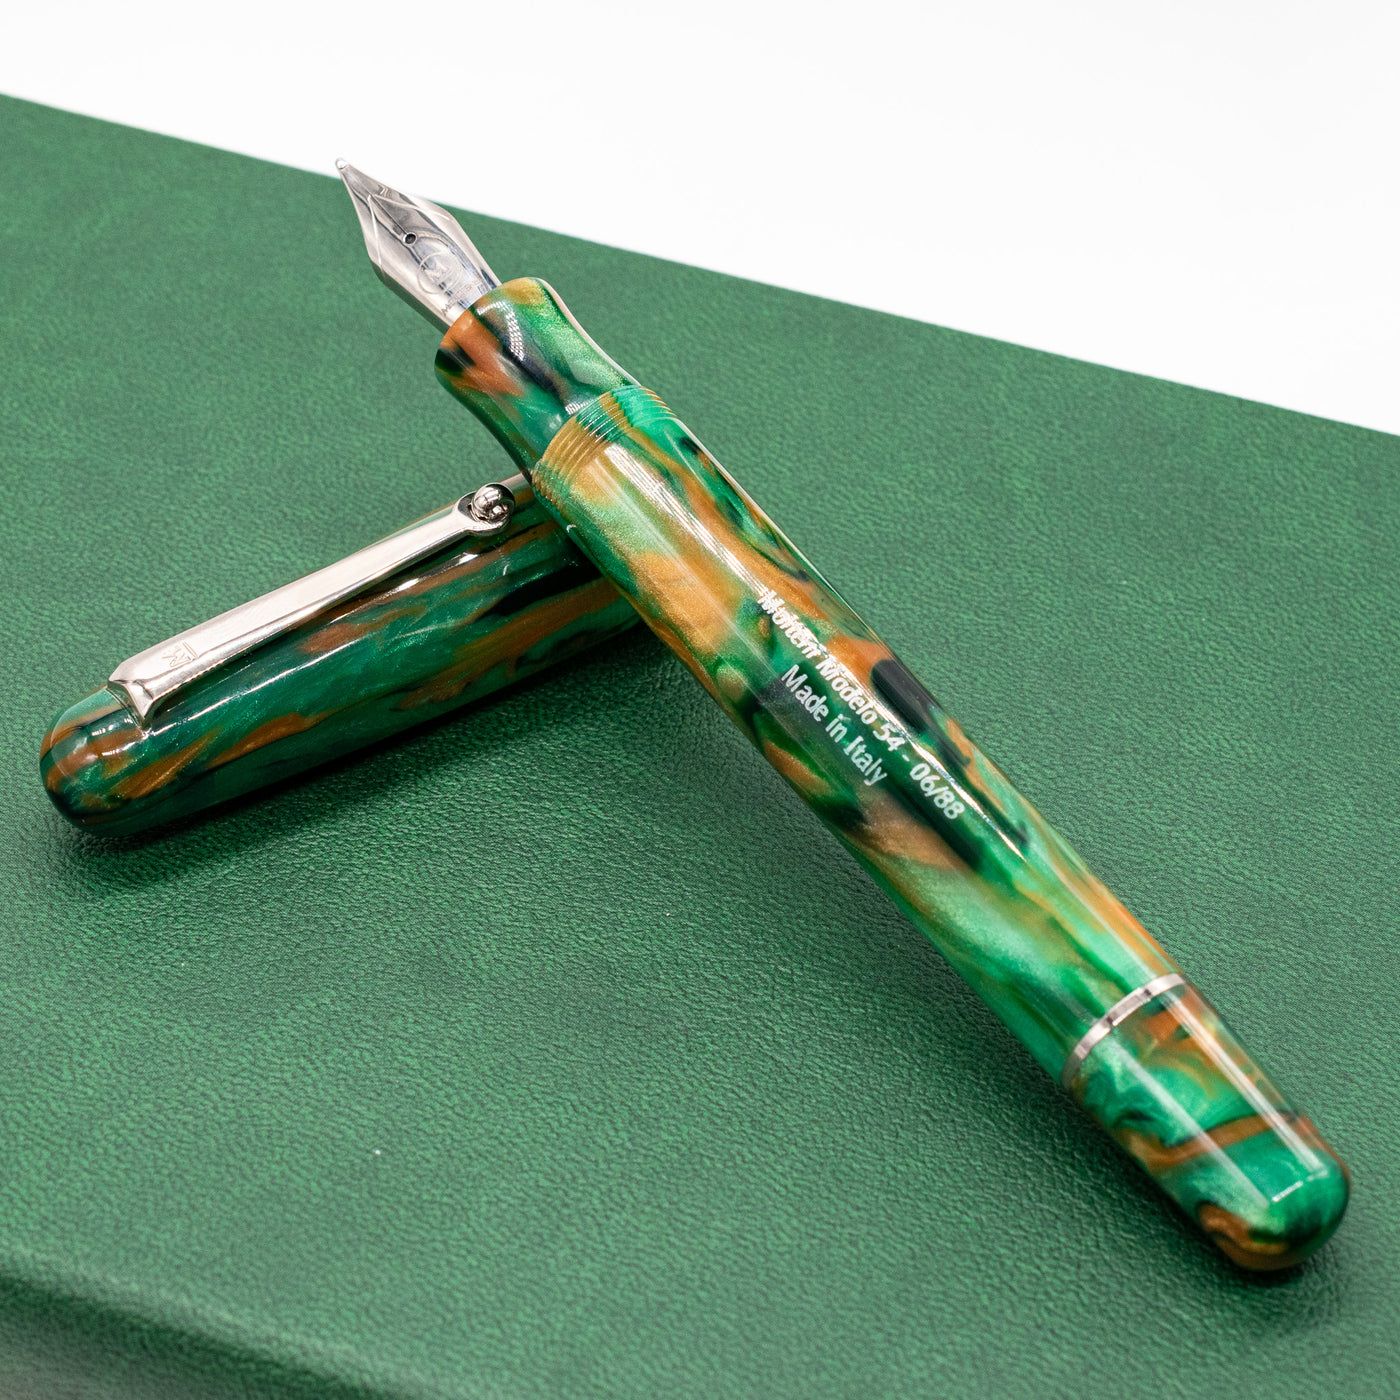 Molteni Modelo 54 Fountain Pen - Jade green